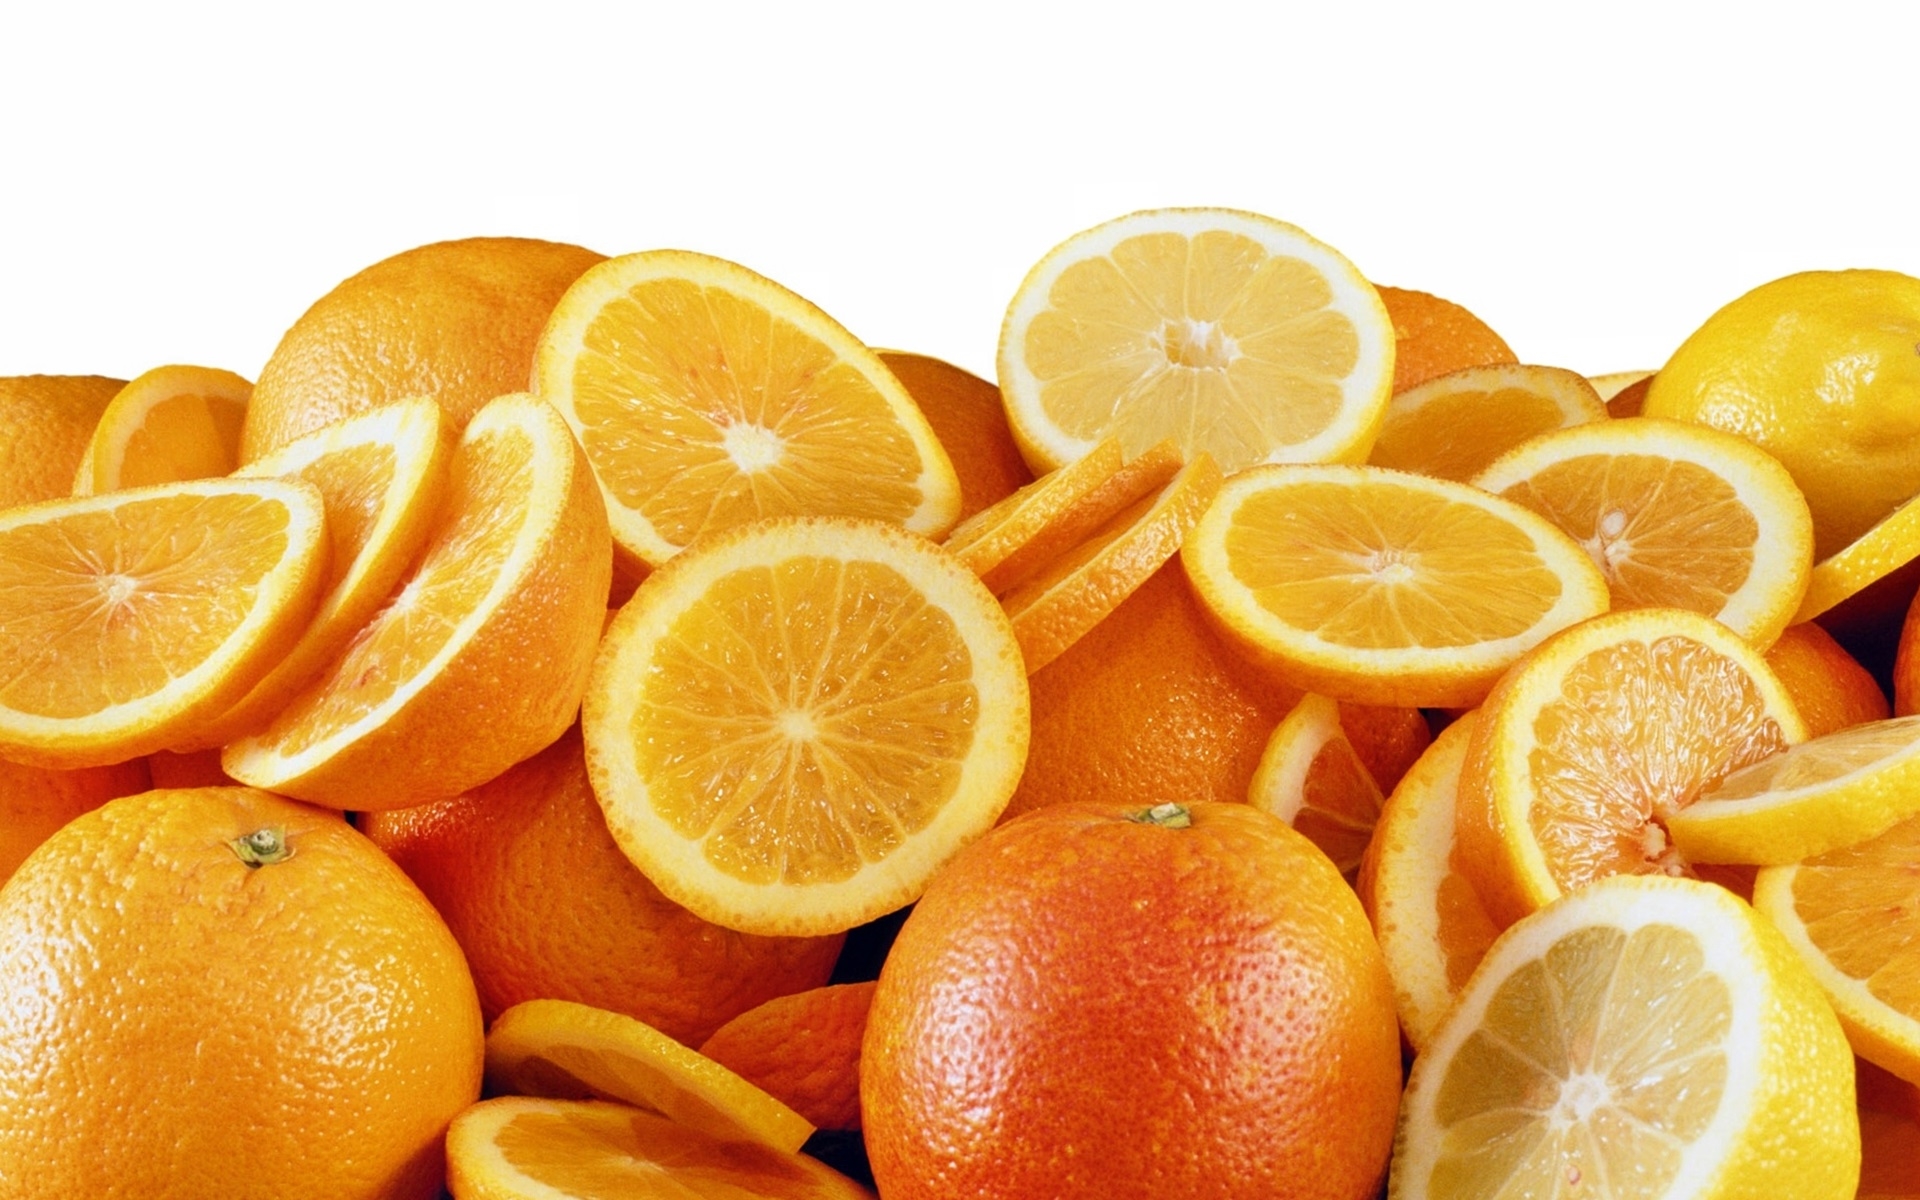  Orange  Fruit With Leaf Hd 